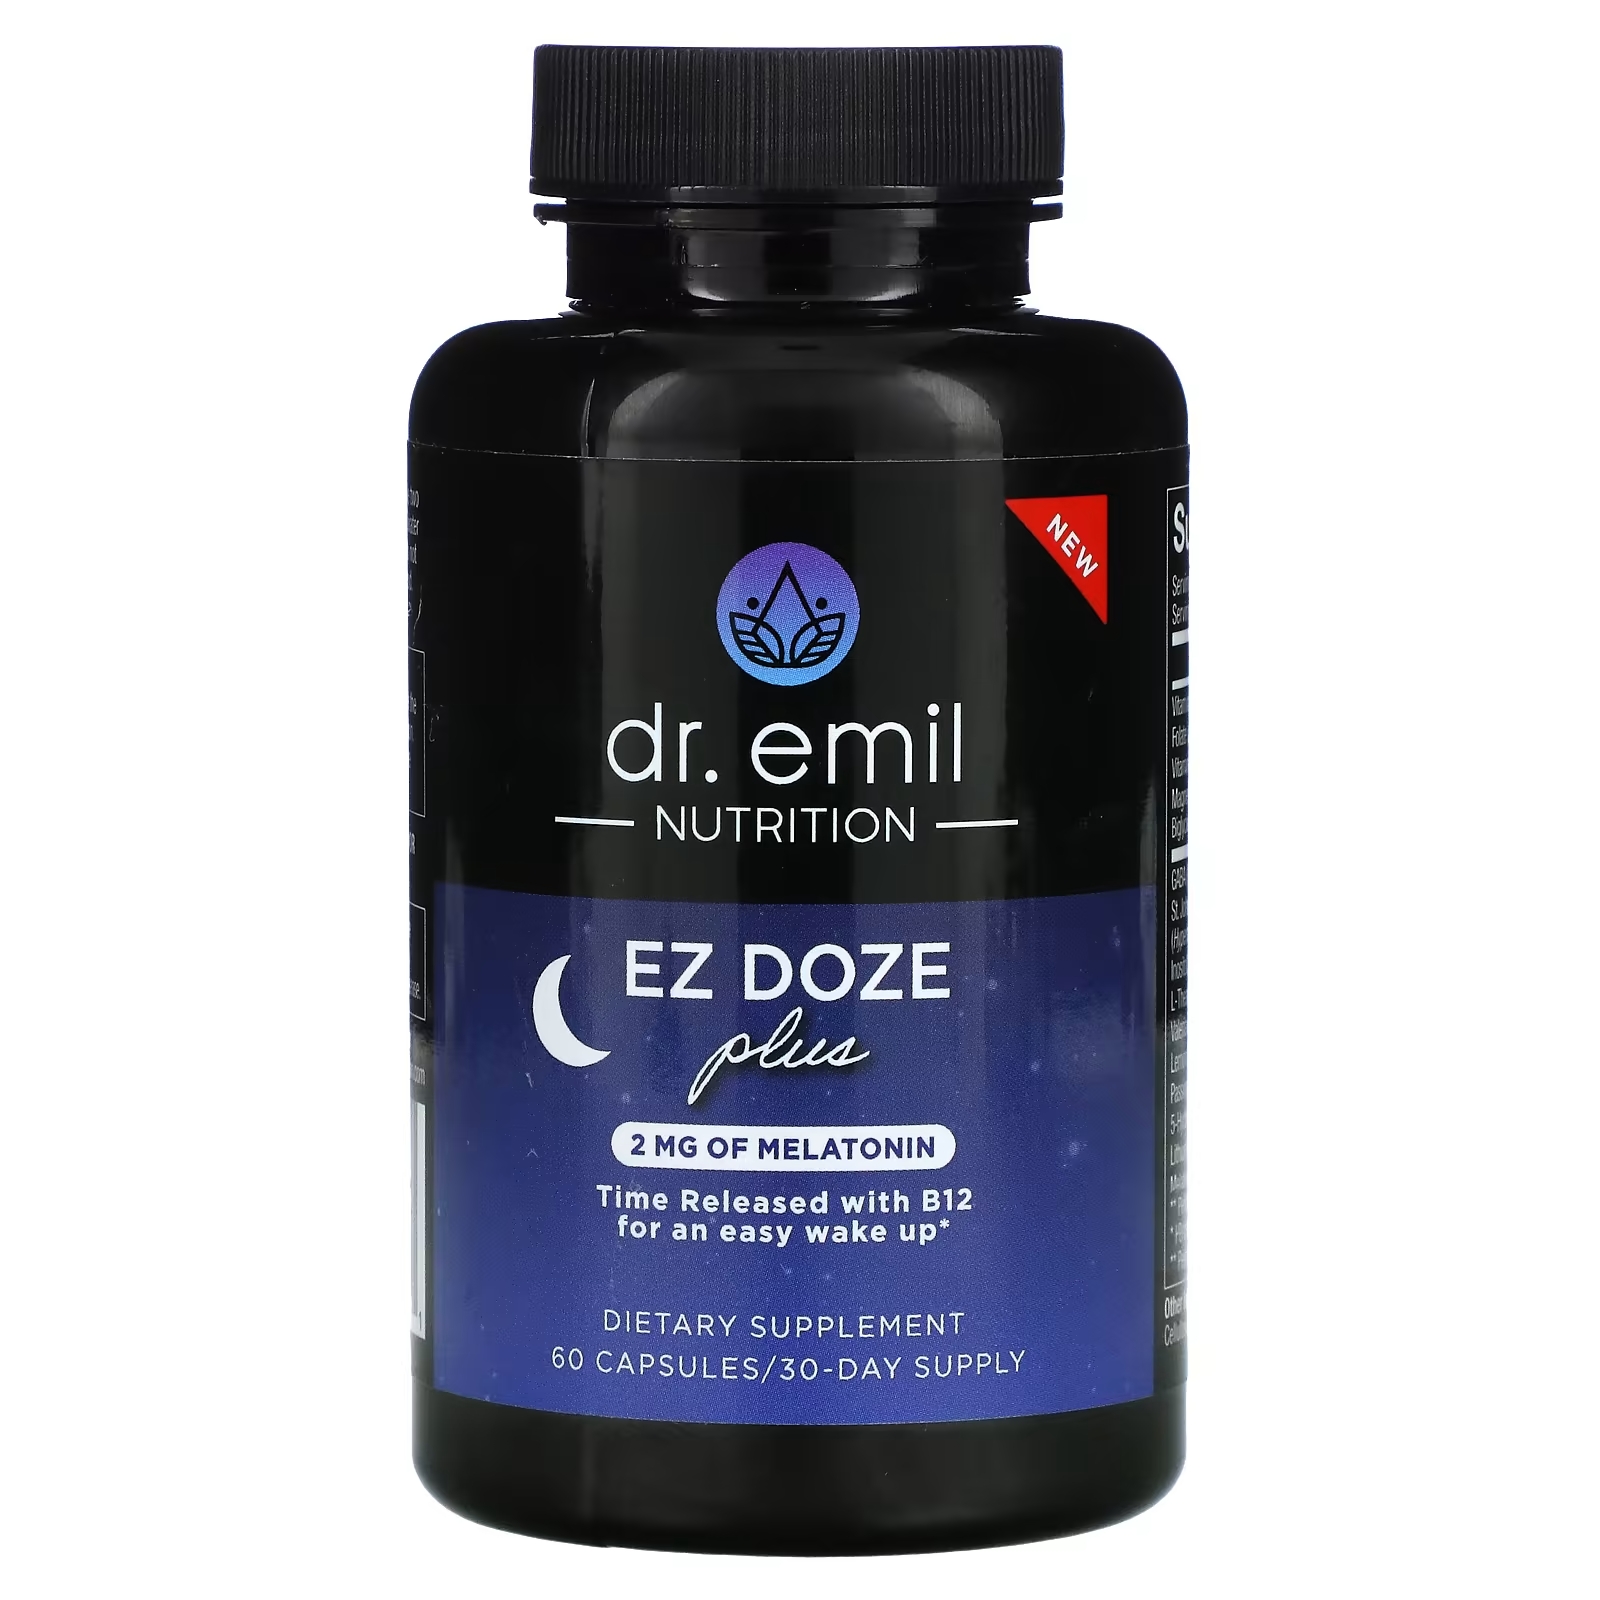 Dr Emil Nutrition EZ DOZE Plus Melatonin, 60 капсул dr emil nutrition комплекс для всего кишечника 60 капсул